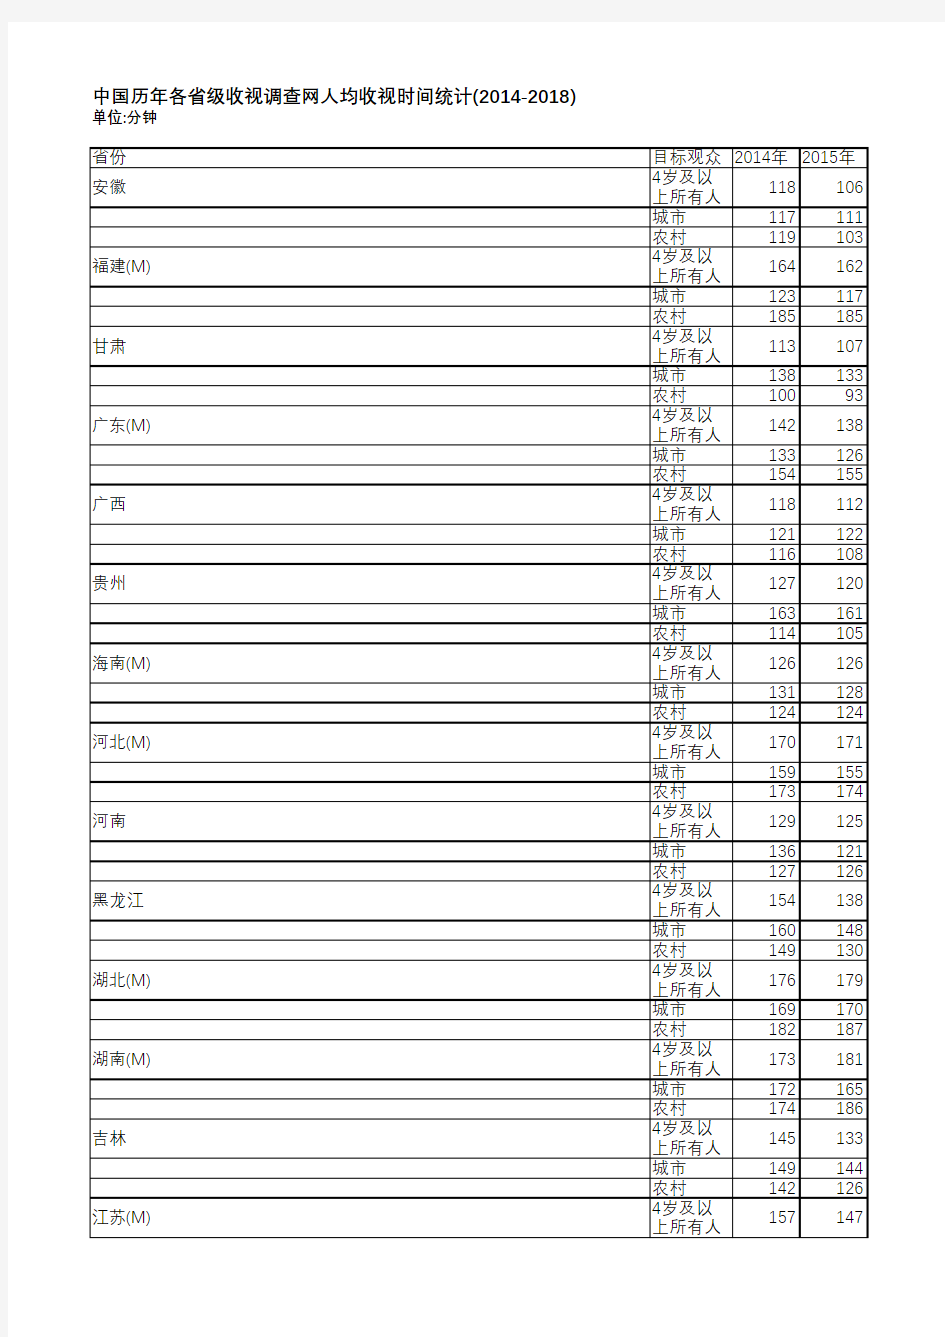 中国电视收视年鉴2019-中国历年各省级收视调查网人均收视时间统计(2014-2018)